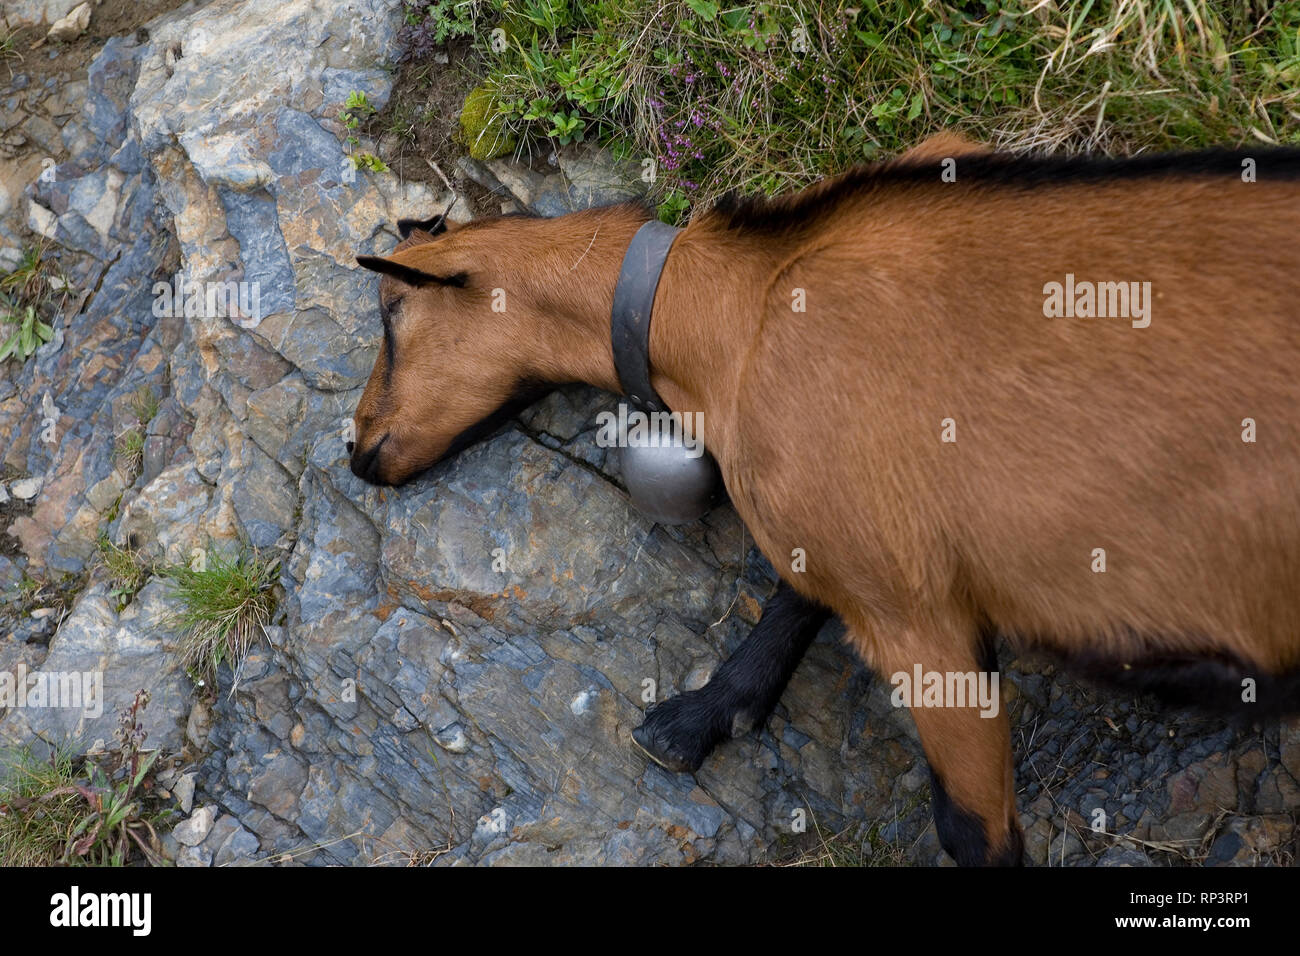 Chèvre (Capra aegagrus hircus) rayer elle-même sur une touffe de bruyère, près de Kleine Scheidegg, Oberland Bernois, Suisse Banque D'Images